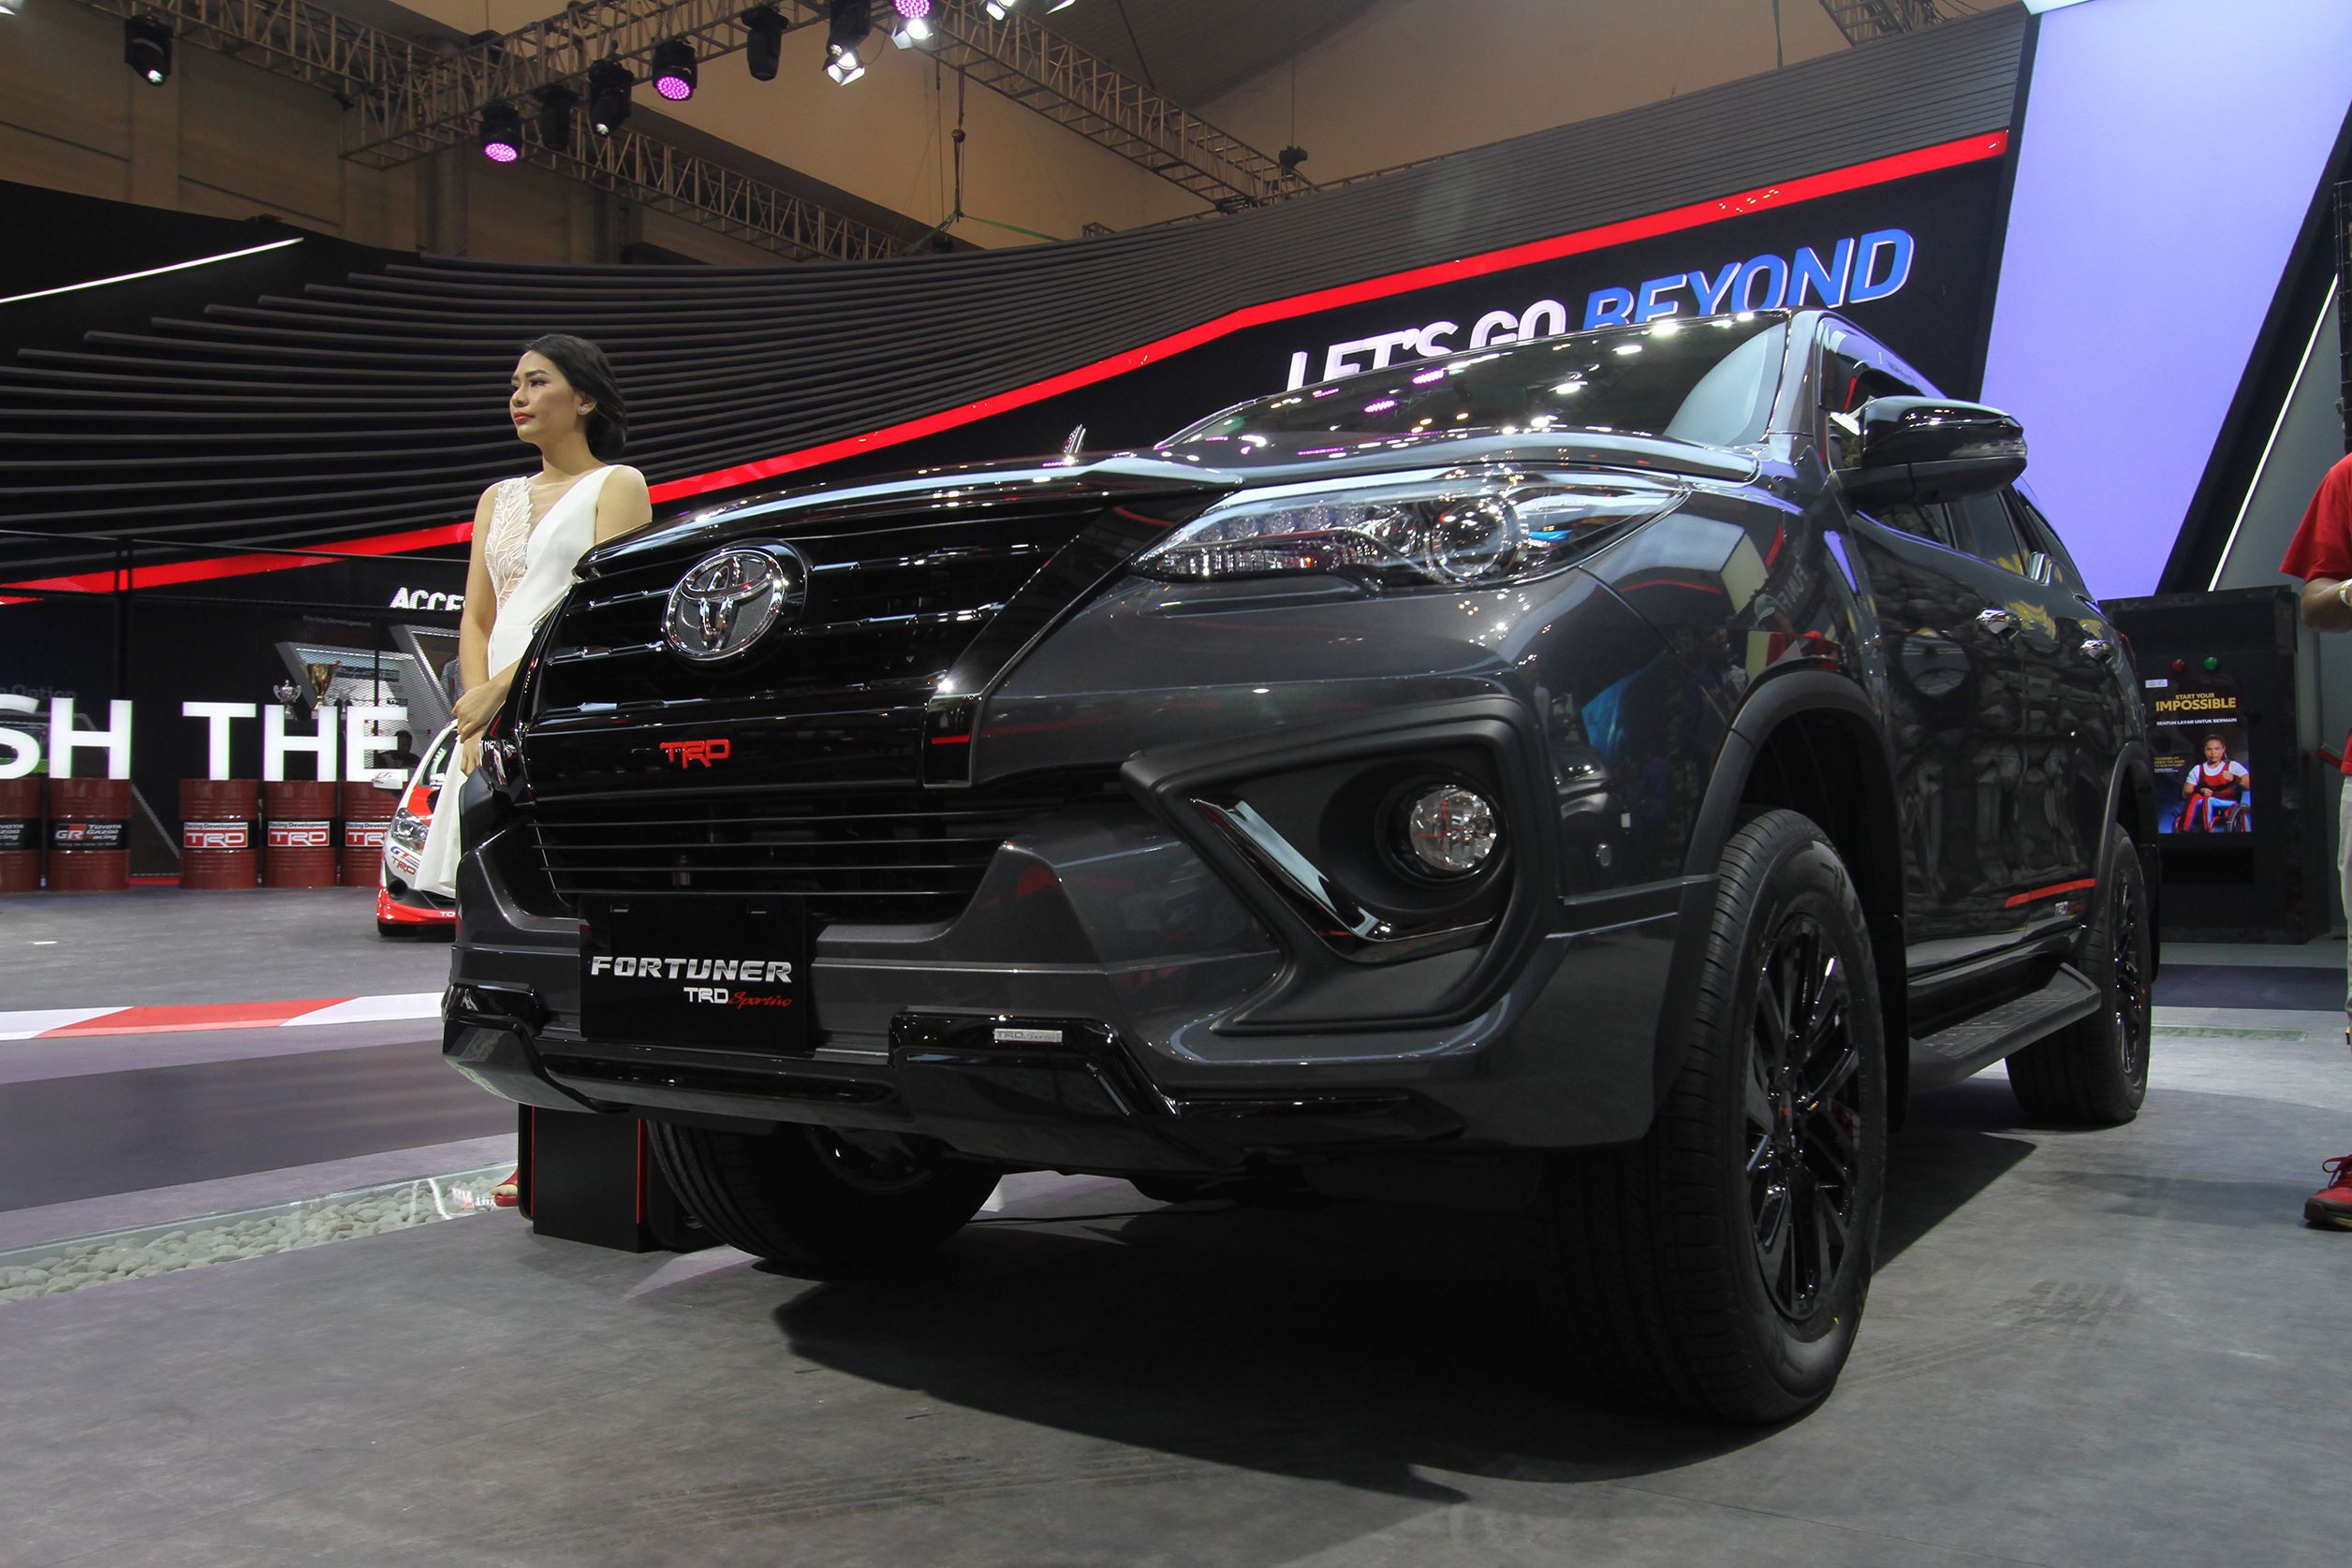 Daftar Mobil Toyota Yang Kena Recall Di Indonesia